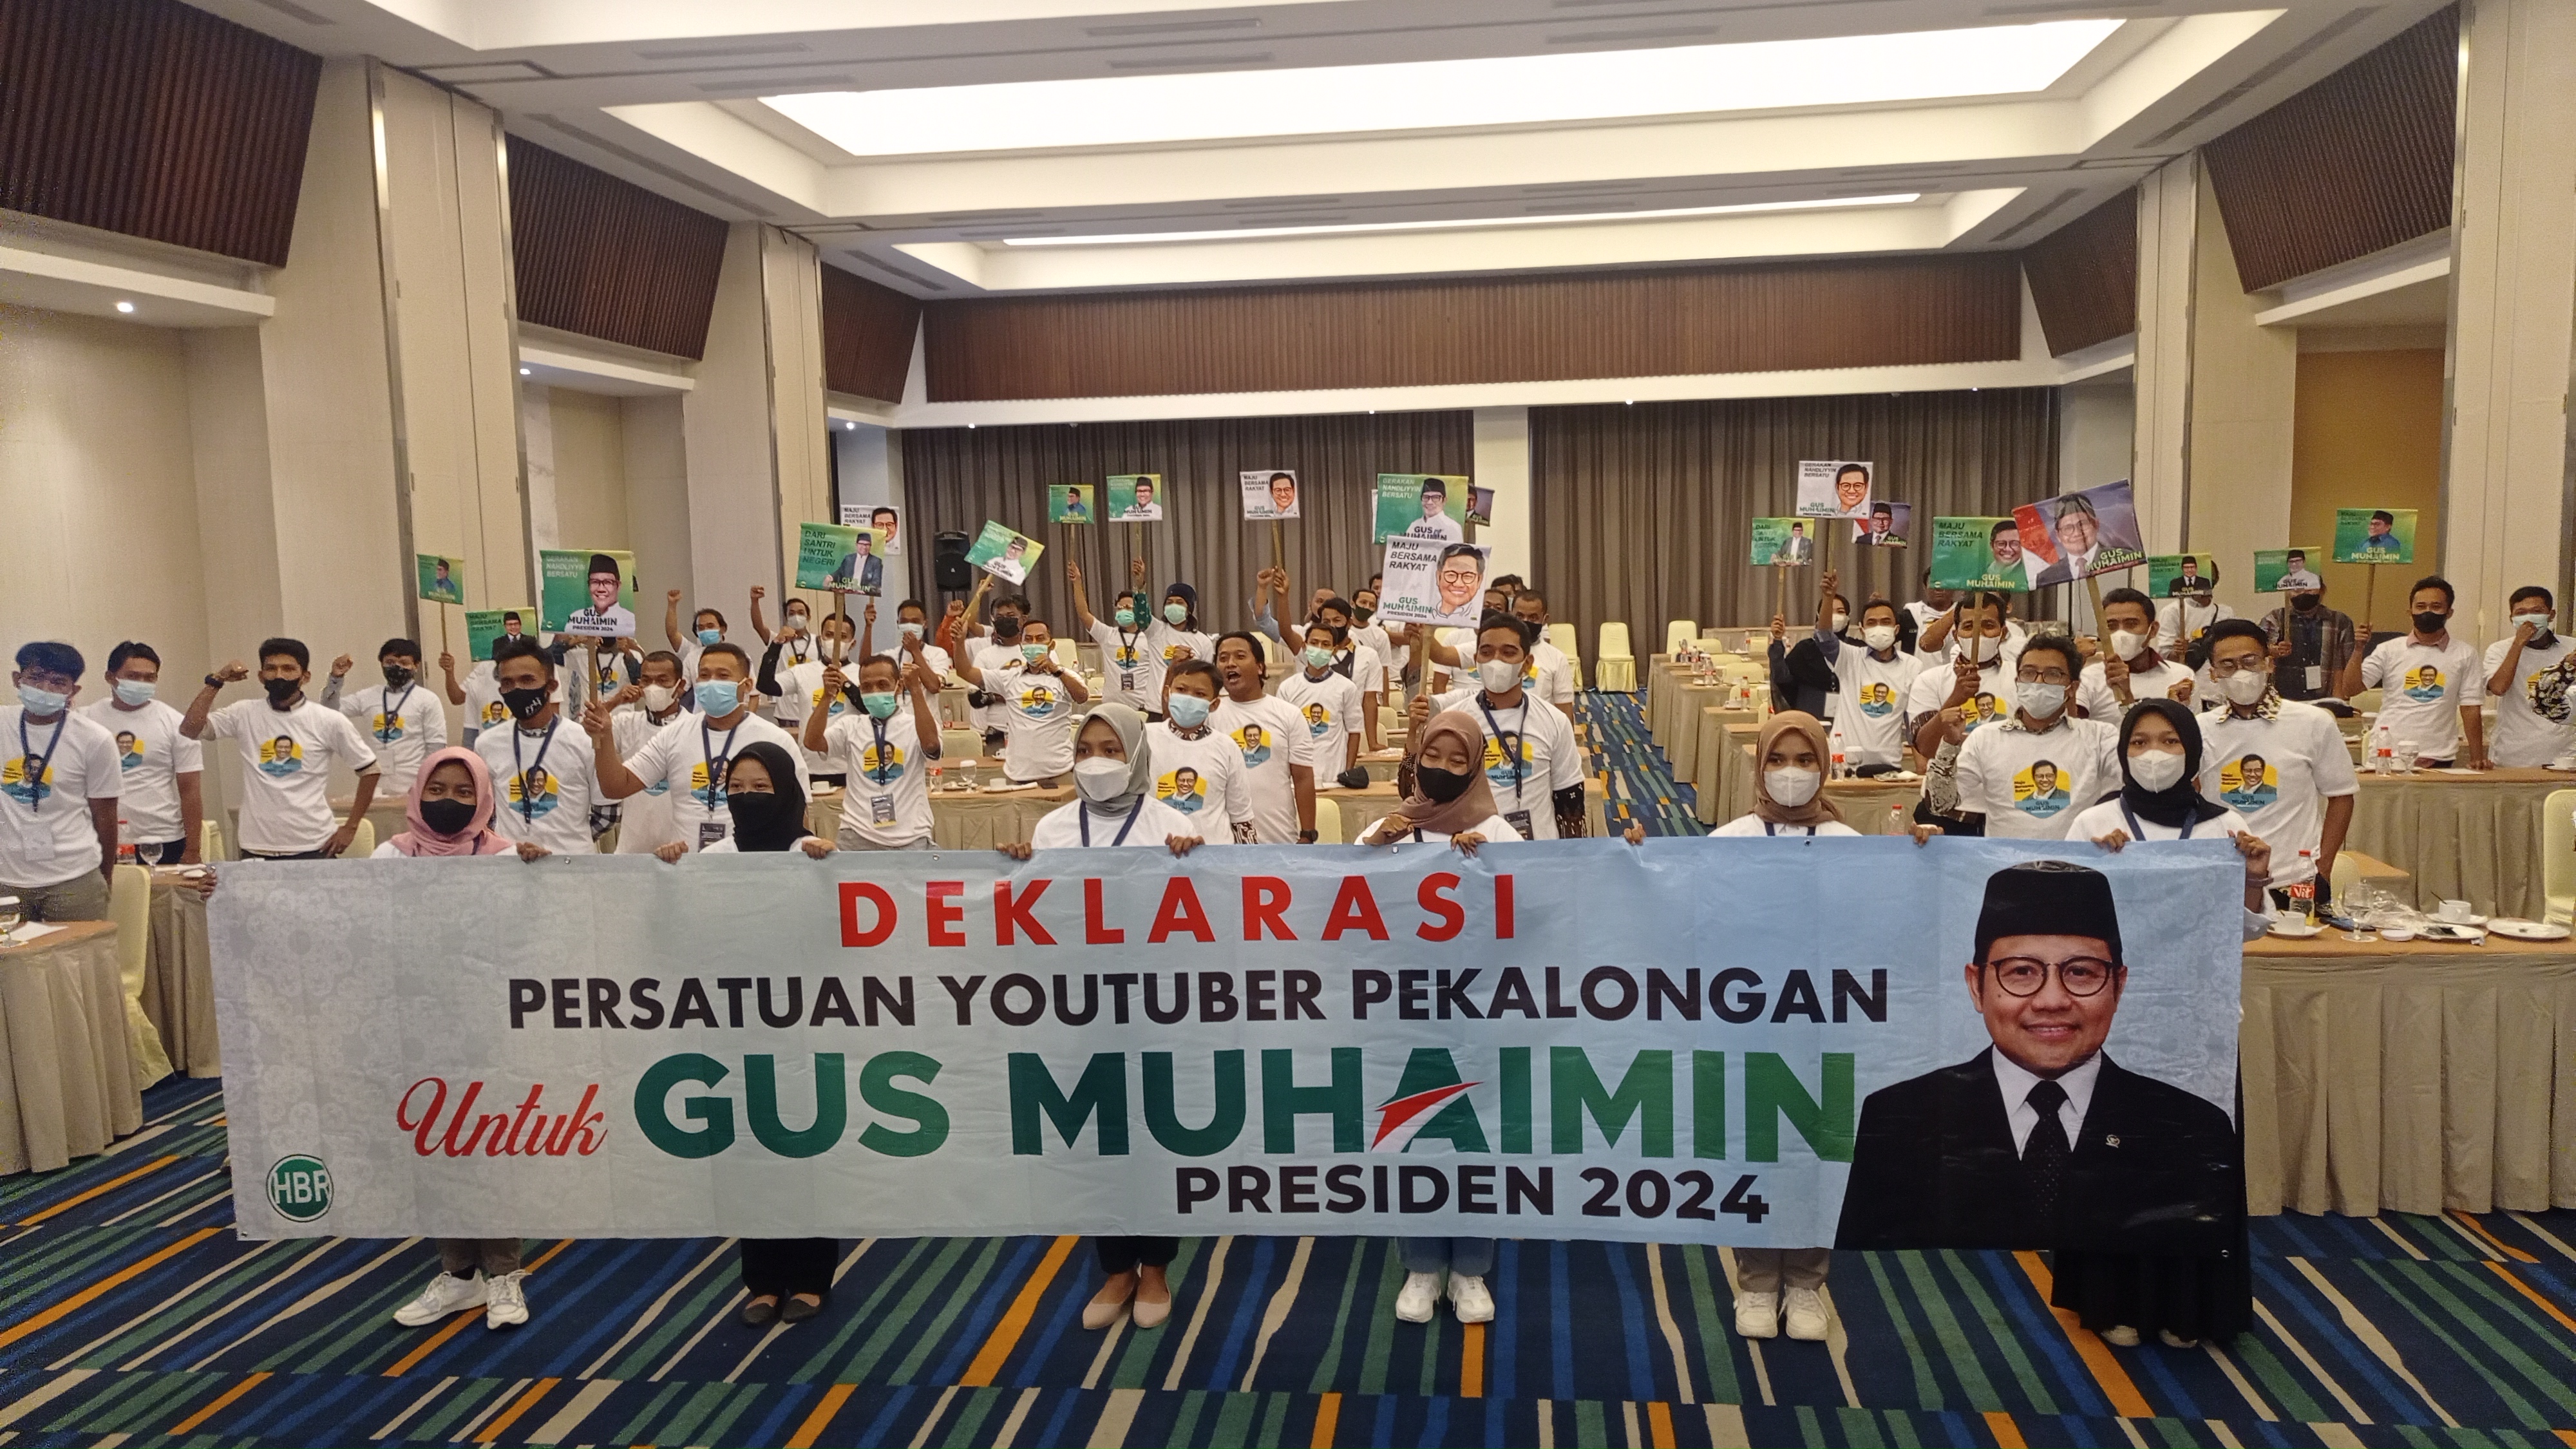 Dukungan untuk Gus Muhaimin datang dari Persatuan Youtuber Pekalongan